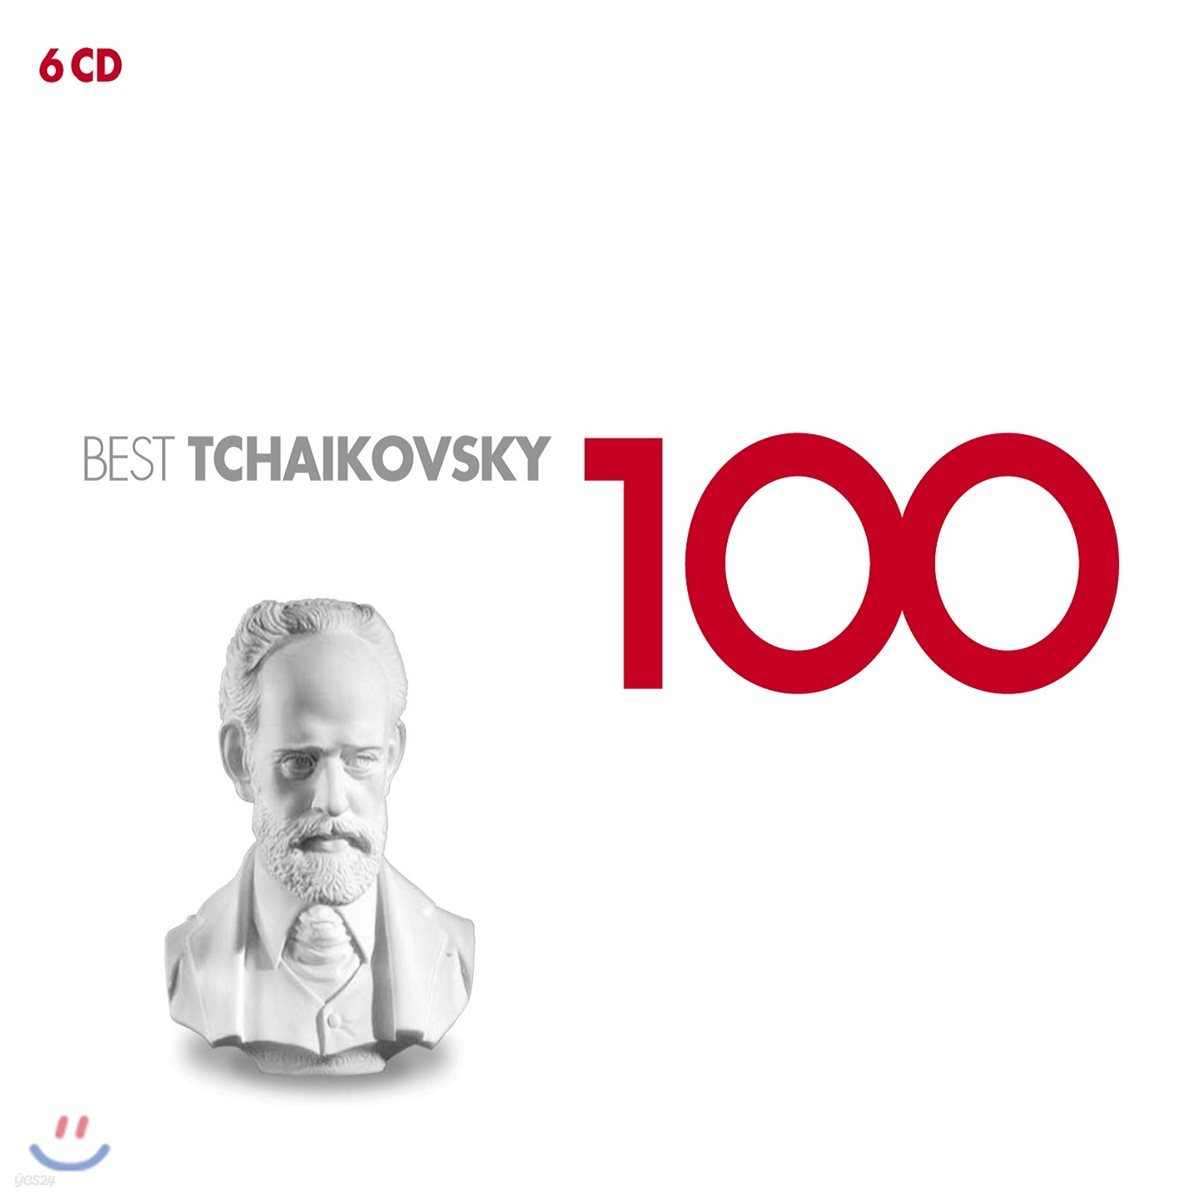 차이코프스키 베스트 100 (100 Best Tchaikovsky)